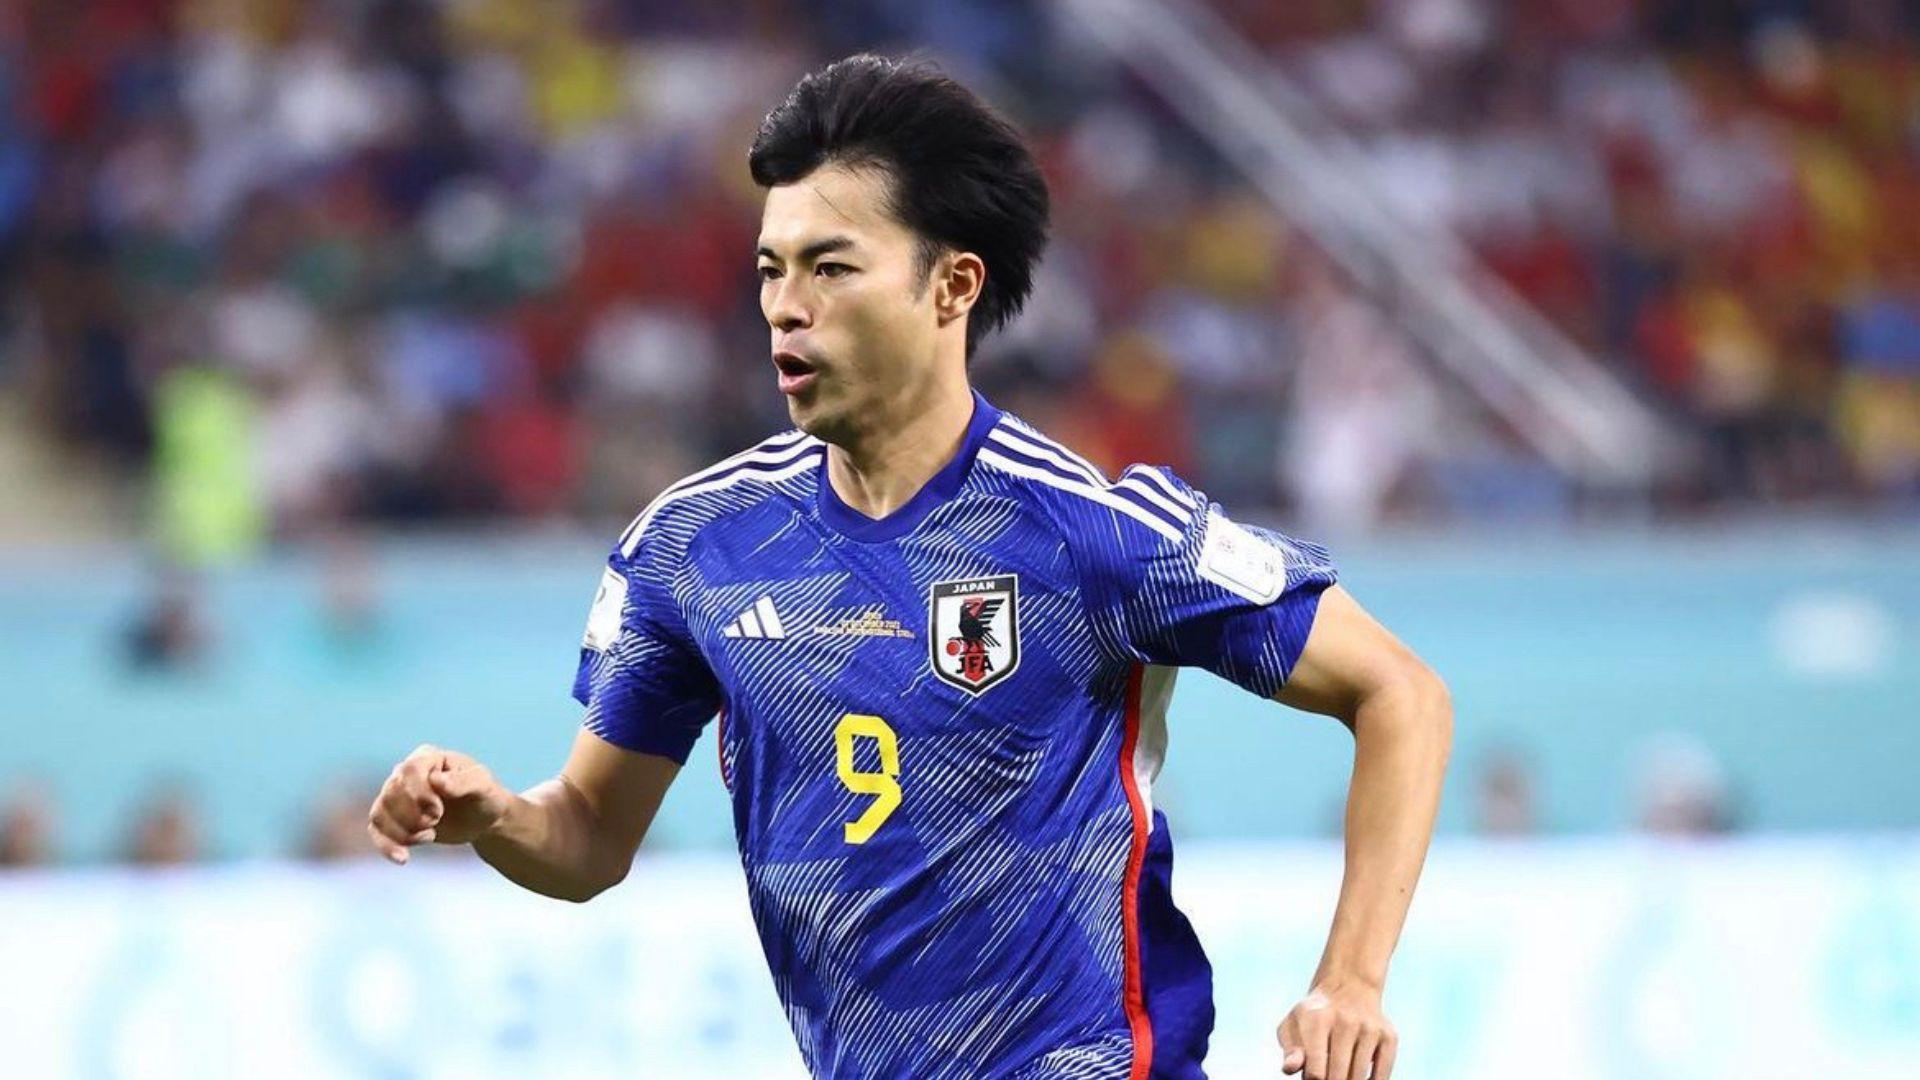 Mitoma Jepun Hero Piala Dunia Jepun Rungkai Kisah Korbankan Bola Sepak Demi Segulung Ijazah